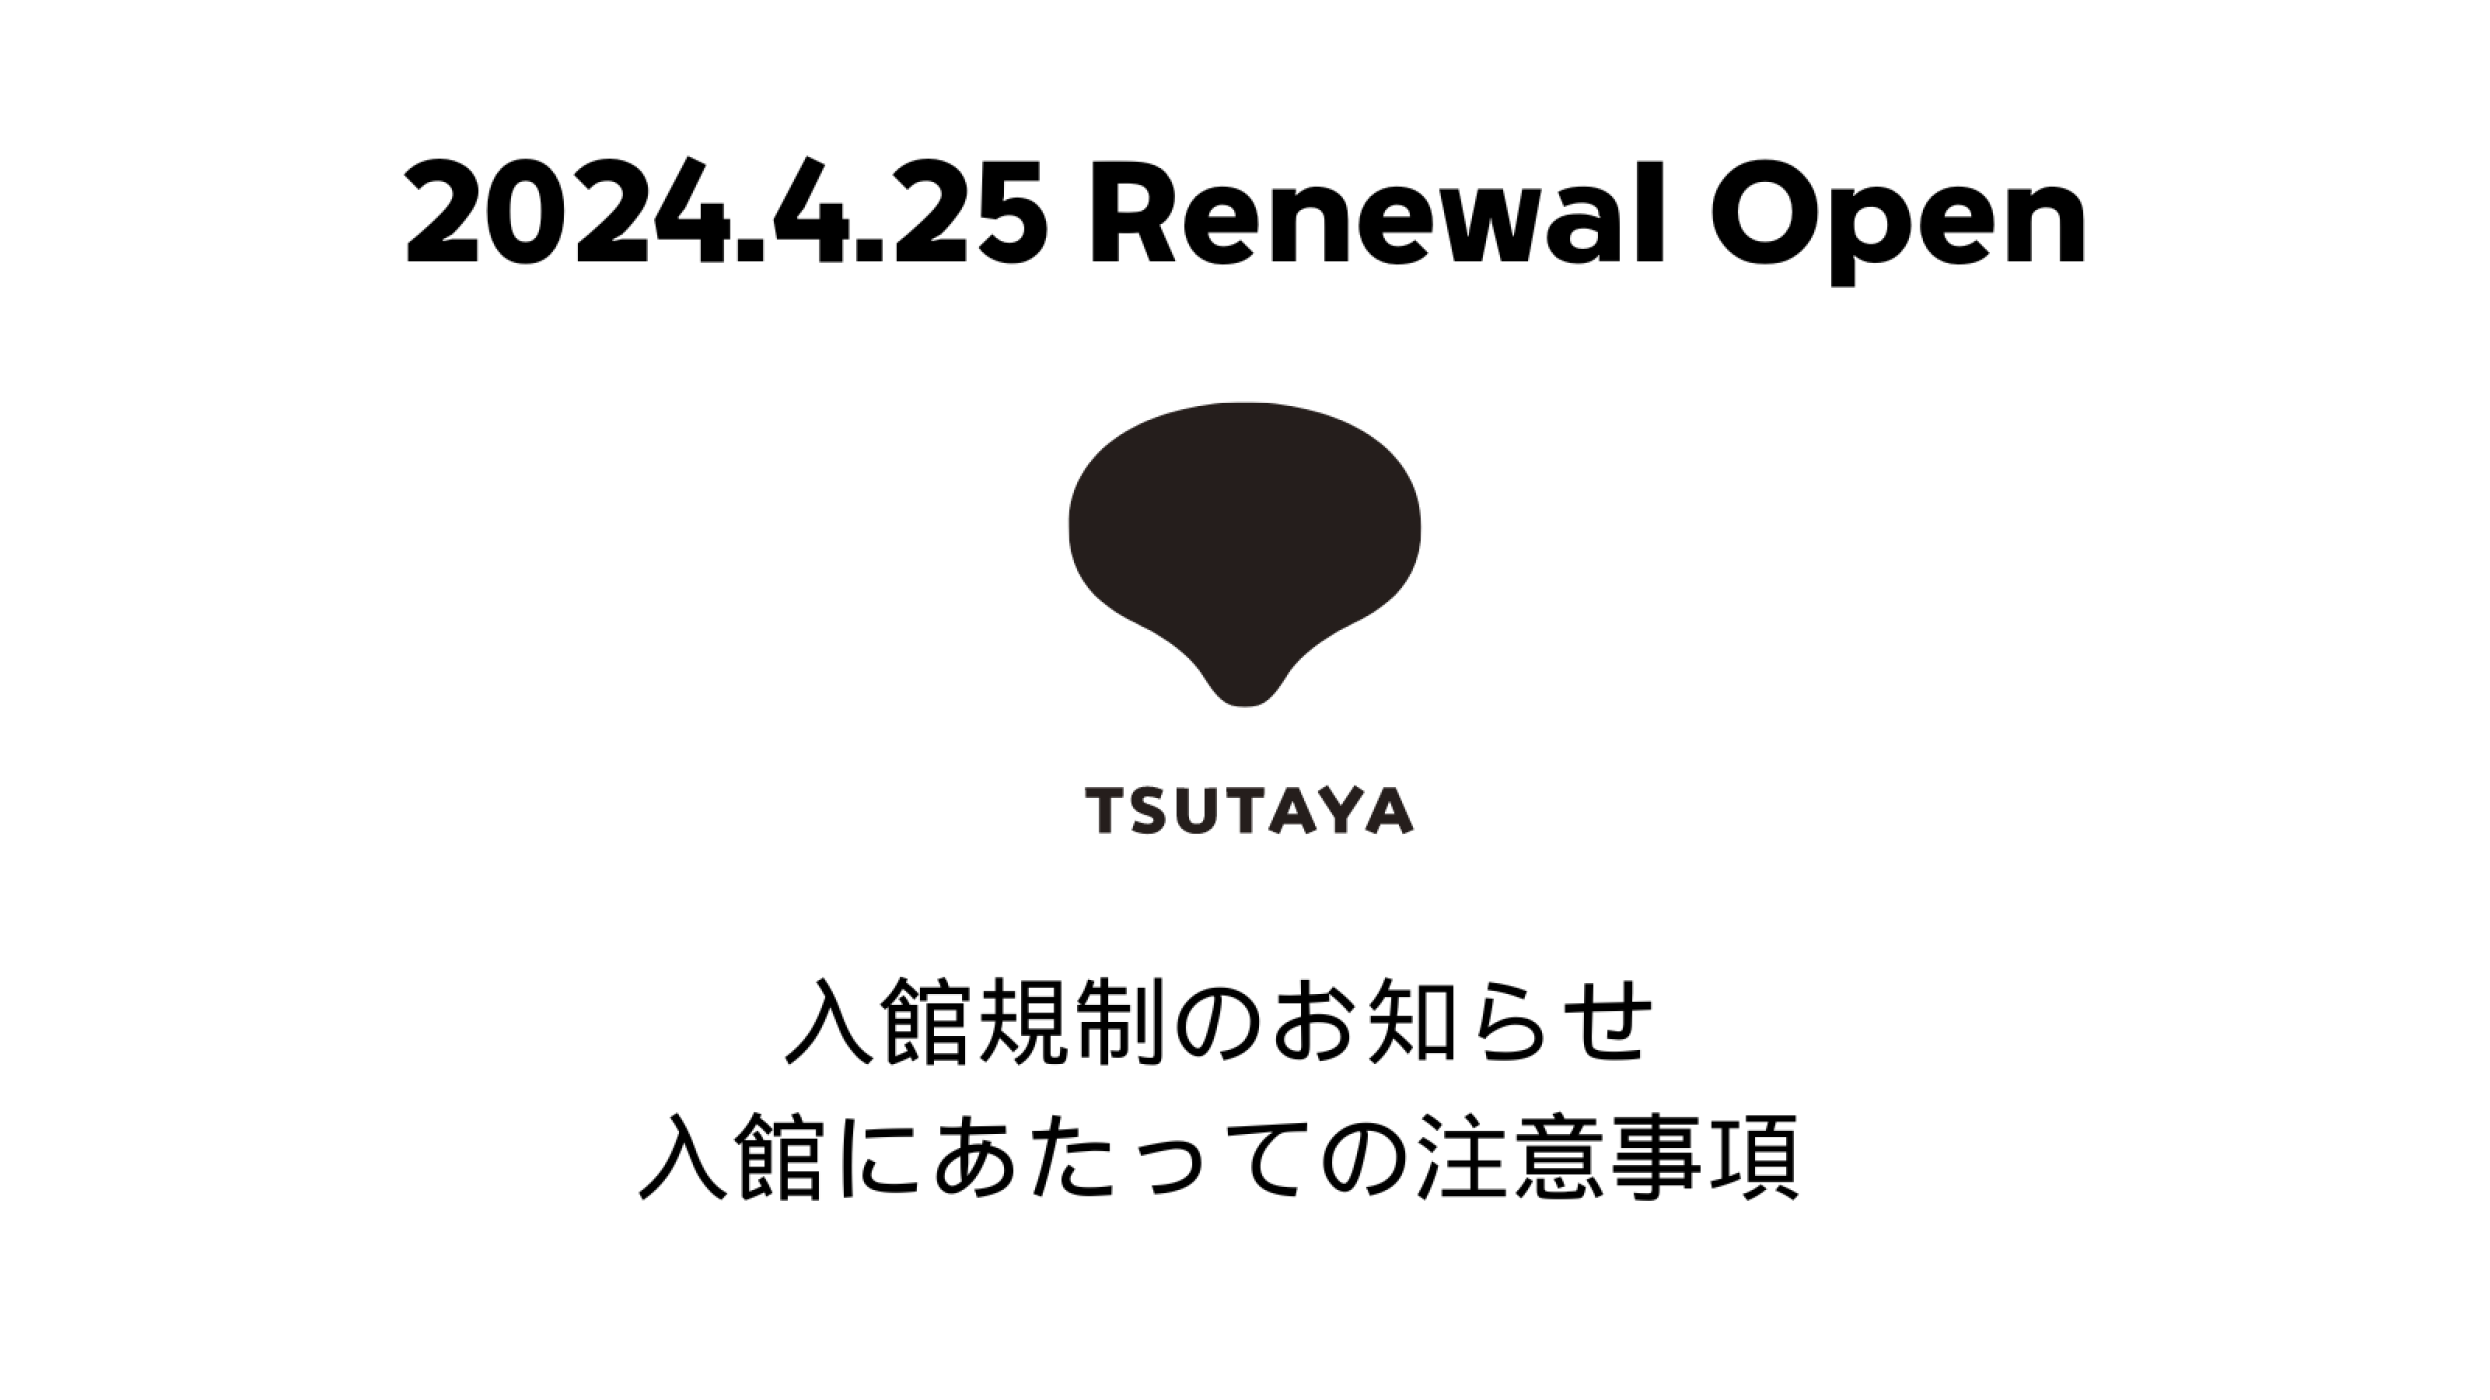 SHIBUYA TSUTAYA リニューアルオープンにともなう入館規制について